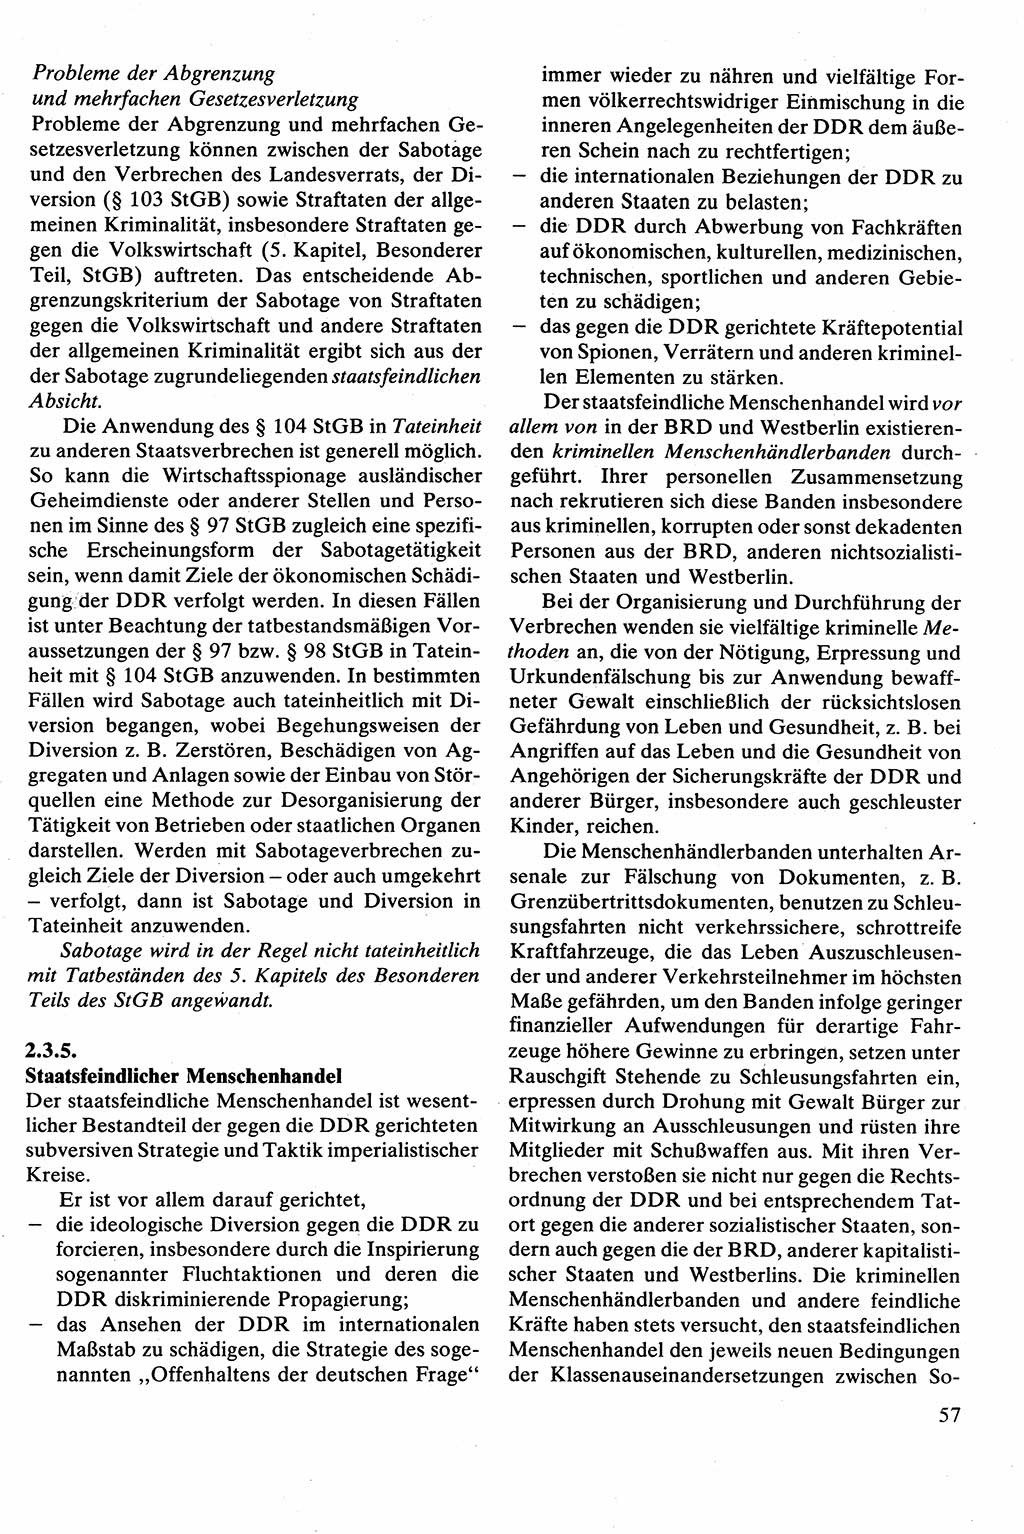 Strafrecht [Deutsche Demokratische Republik (DDR)], Besonderer Teil, Lehrbuch 1981, Seite 57 (Strafr. DDR BT Lb. 1981, S. 57)